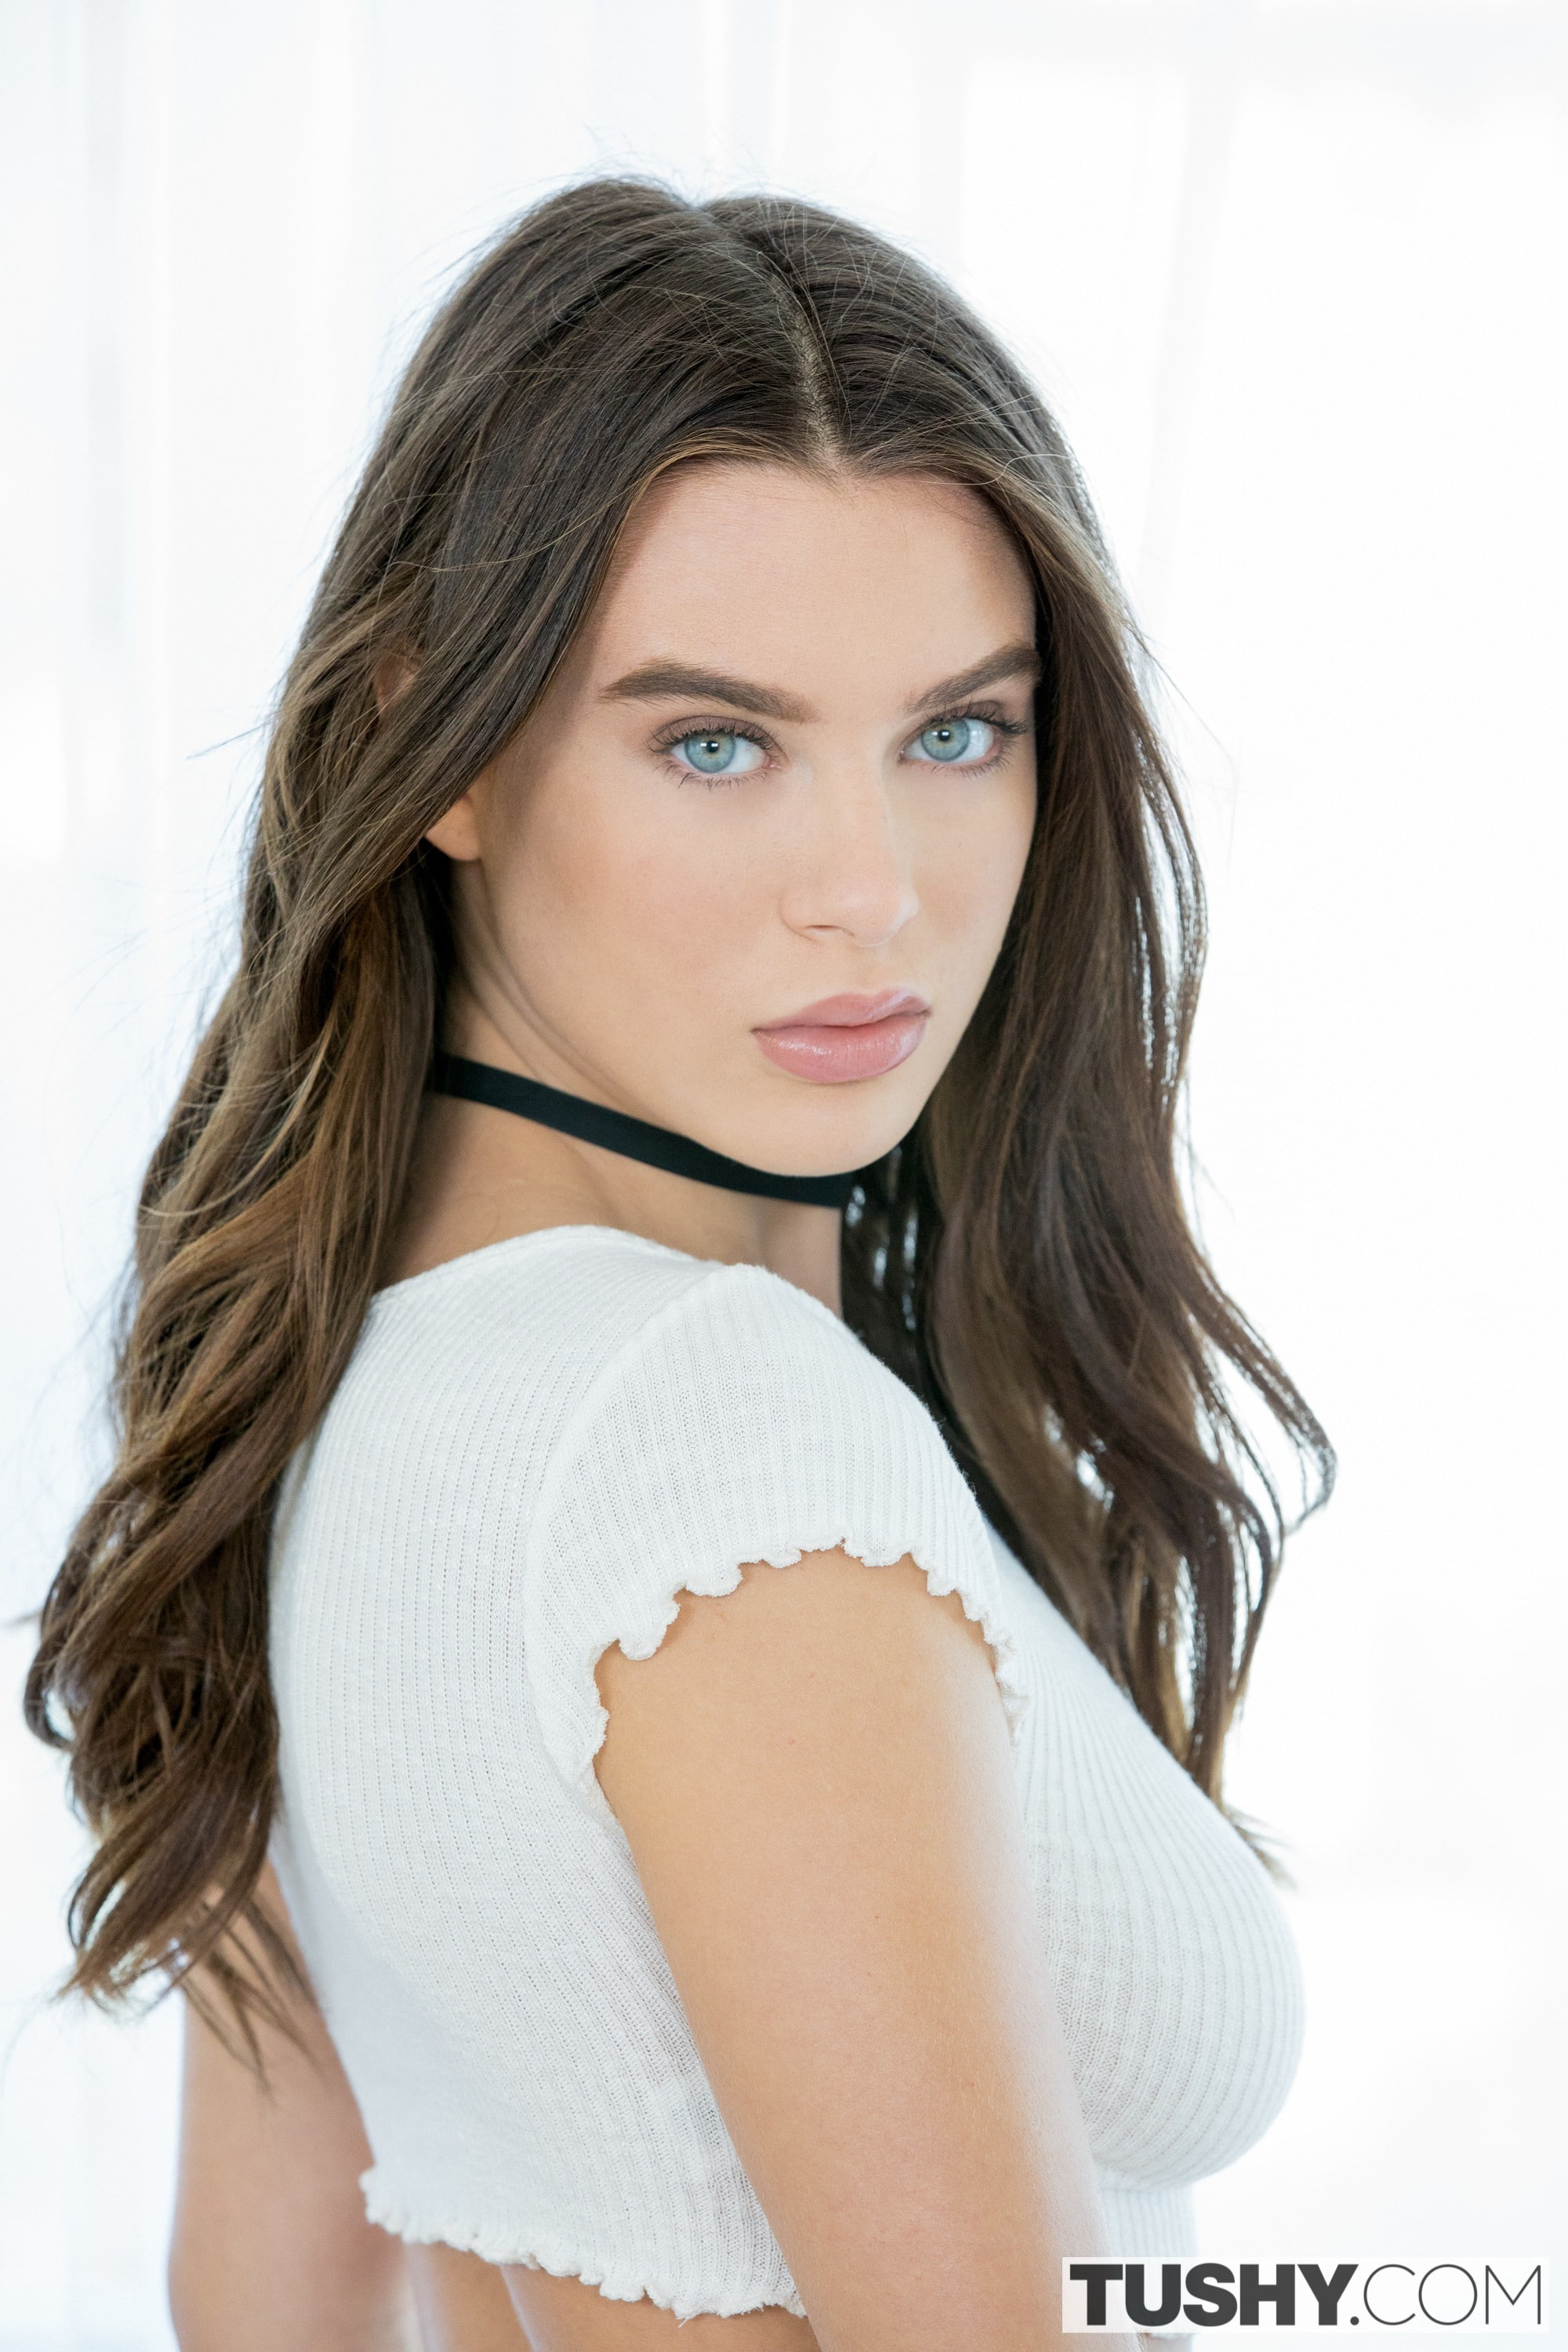 Lana Rhoades, model, women, blue eyes, portrait display